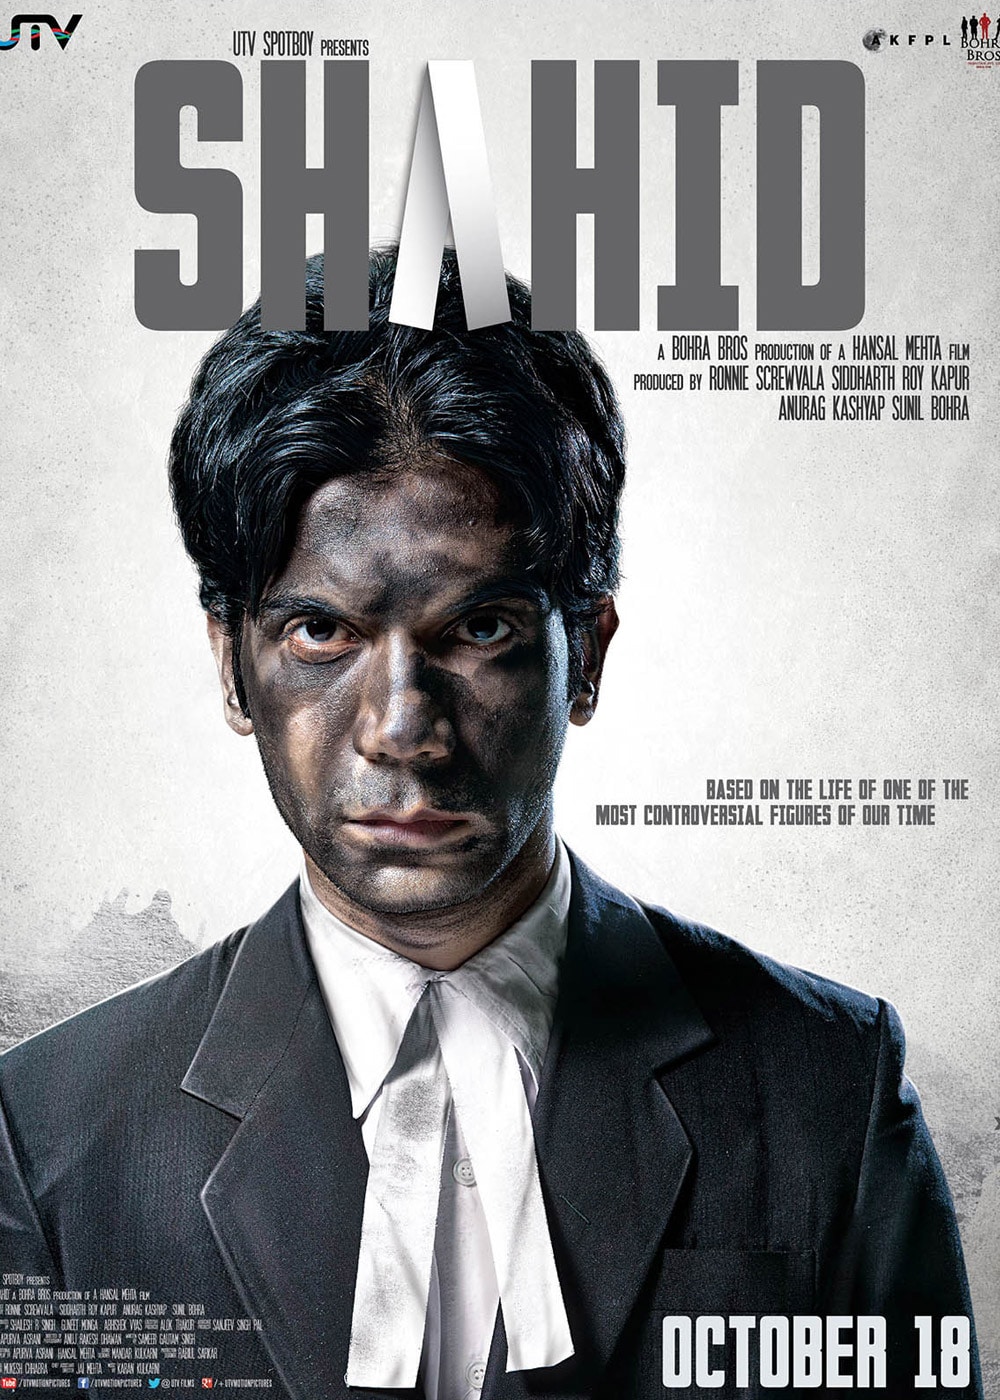 Ricky Sandhu - IMDb